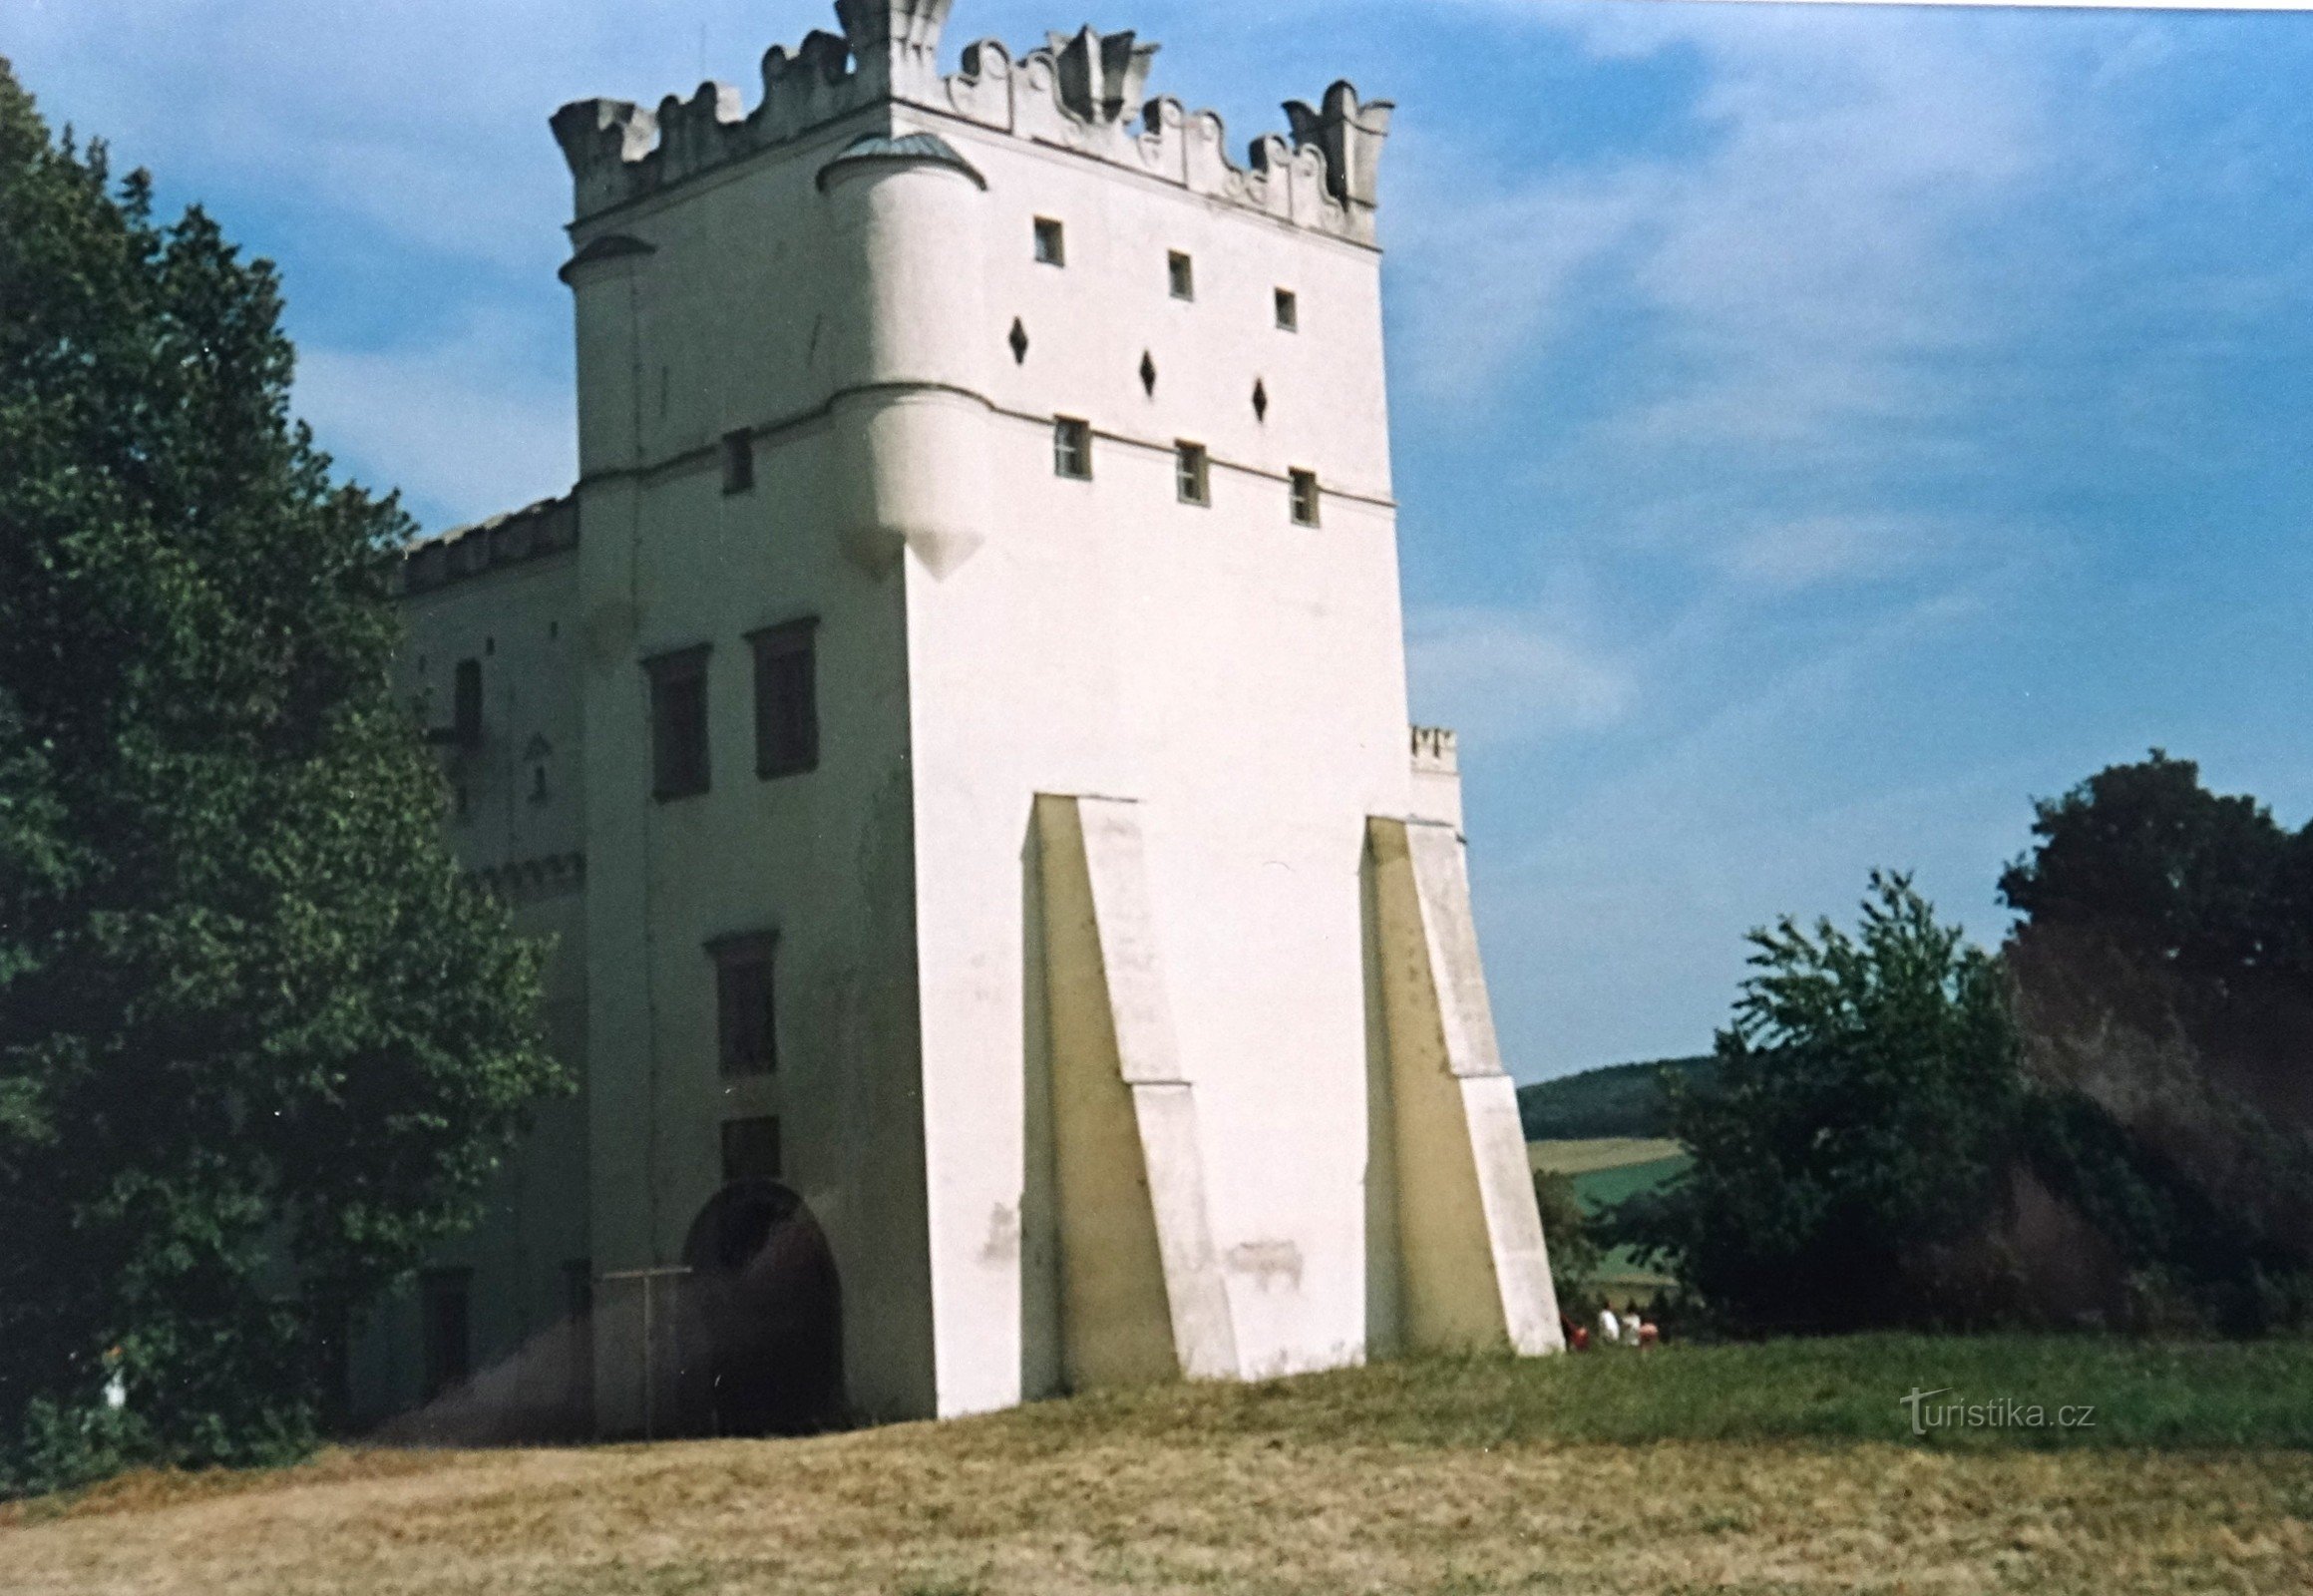 New Castles near Nesovice